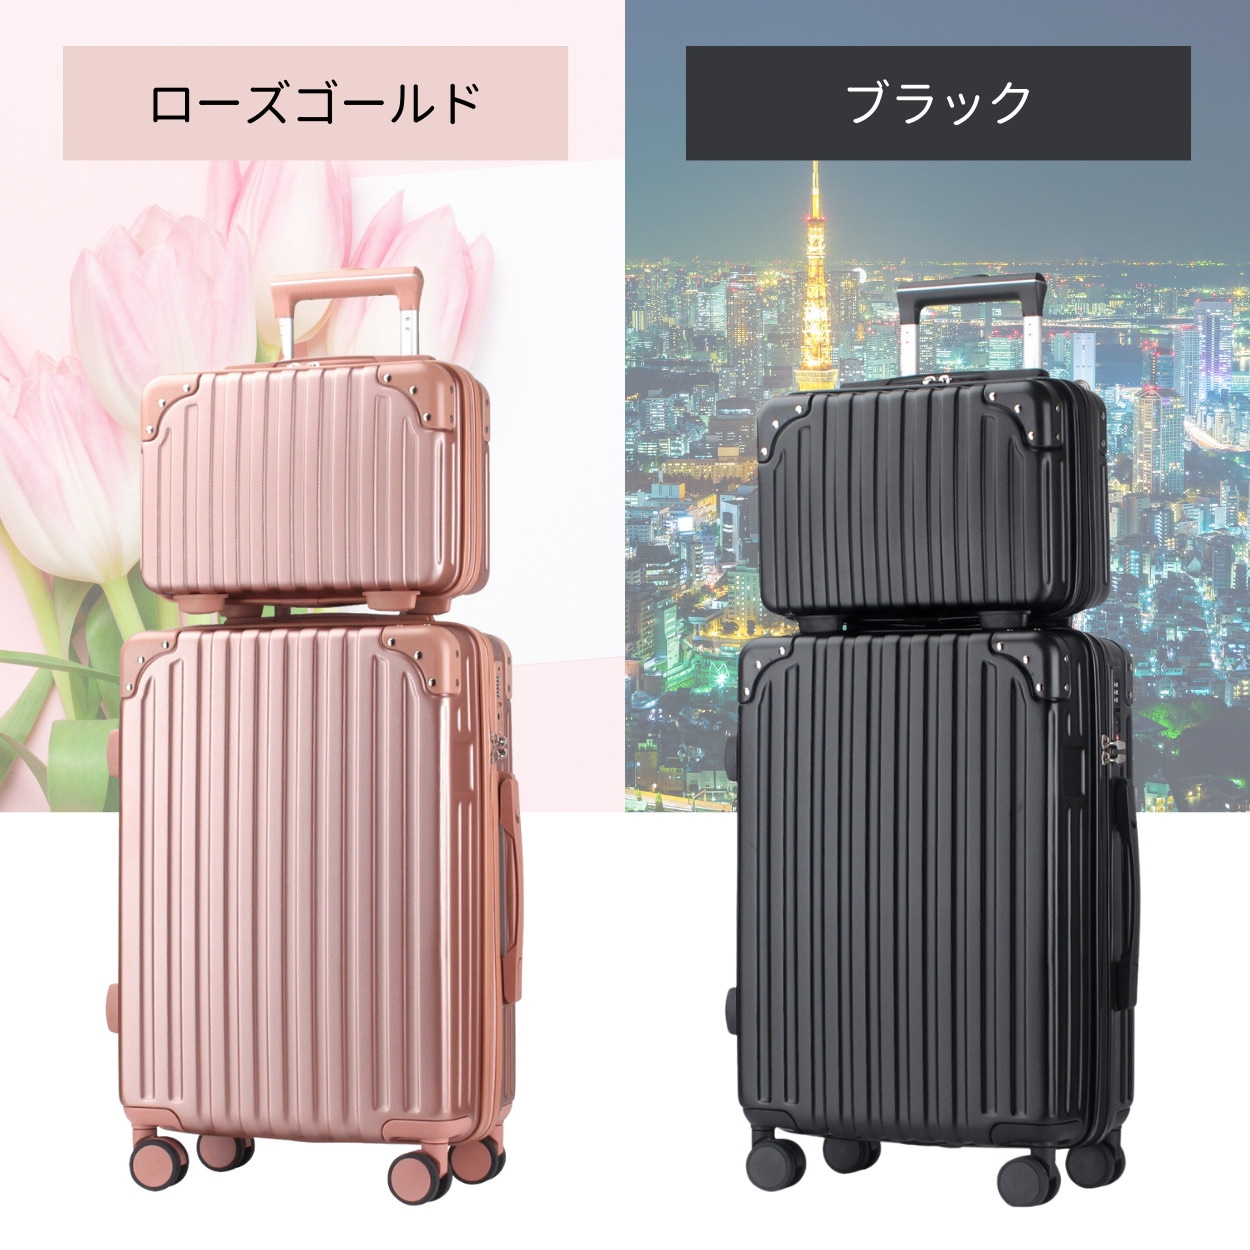 [Qoo10] スーツケース 親子セット キャリーケース